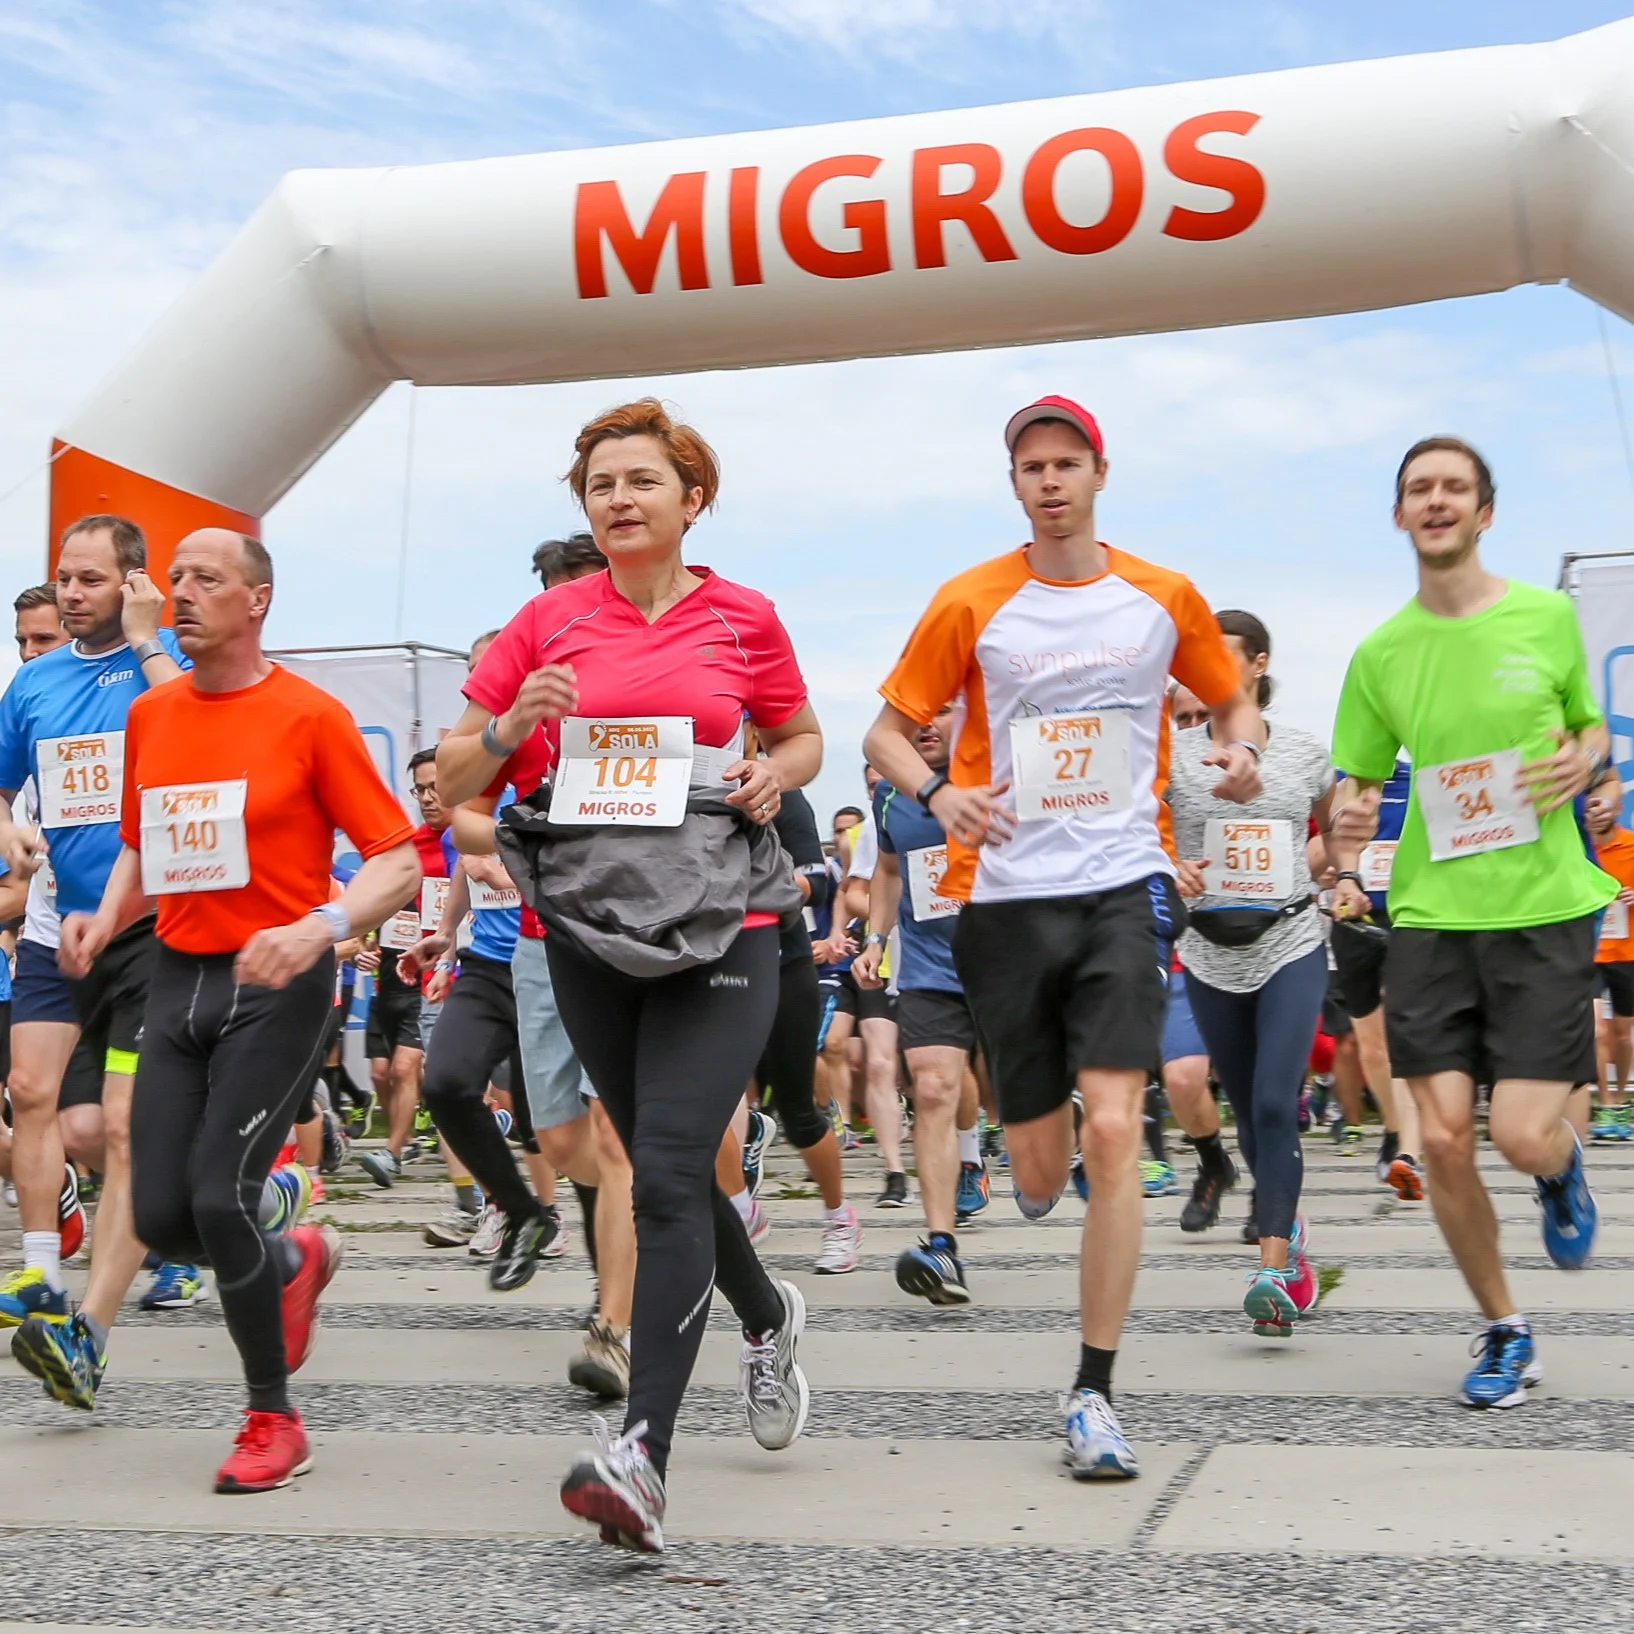 Läuferinnen und Läufer laufen unter einem aufblasbaren Torbogen der Migros.